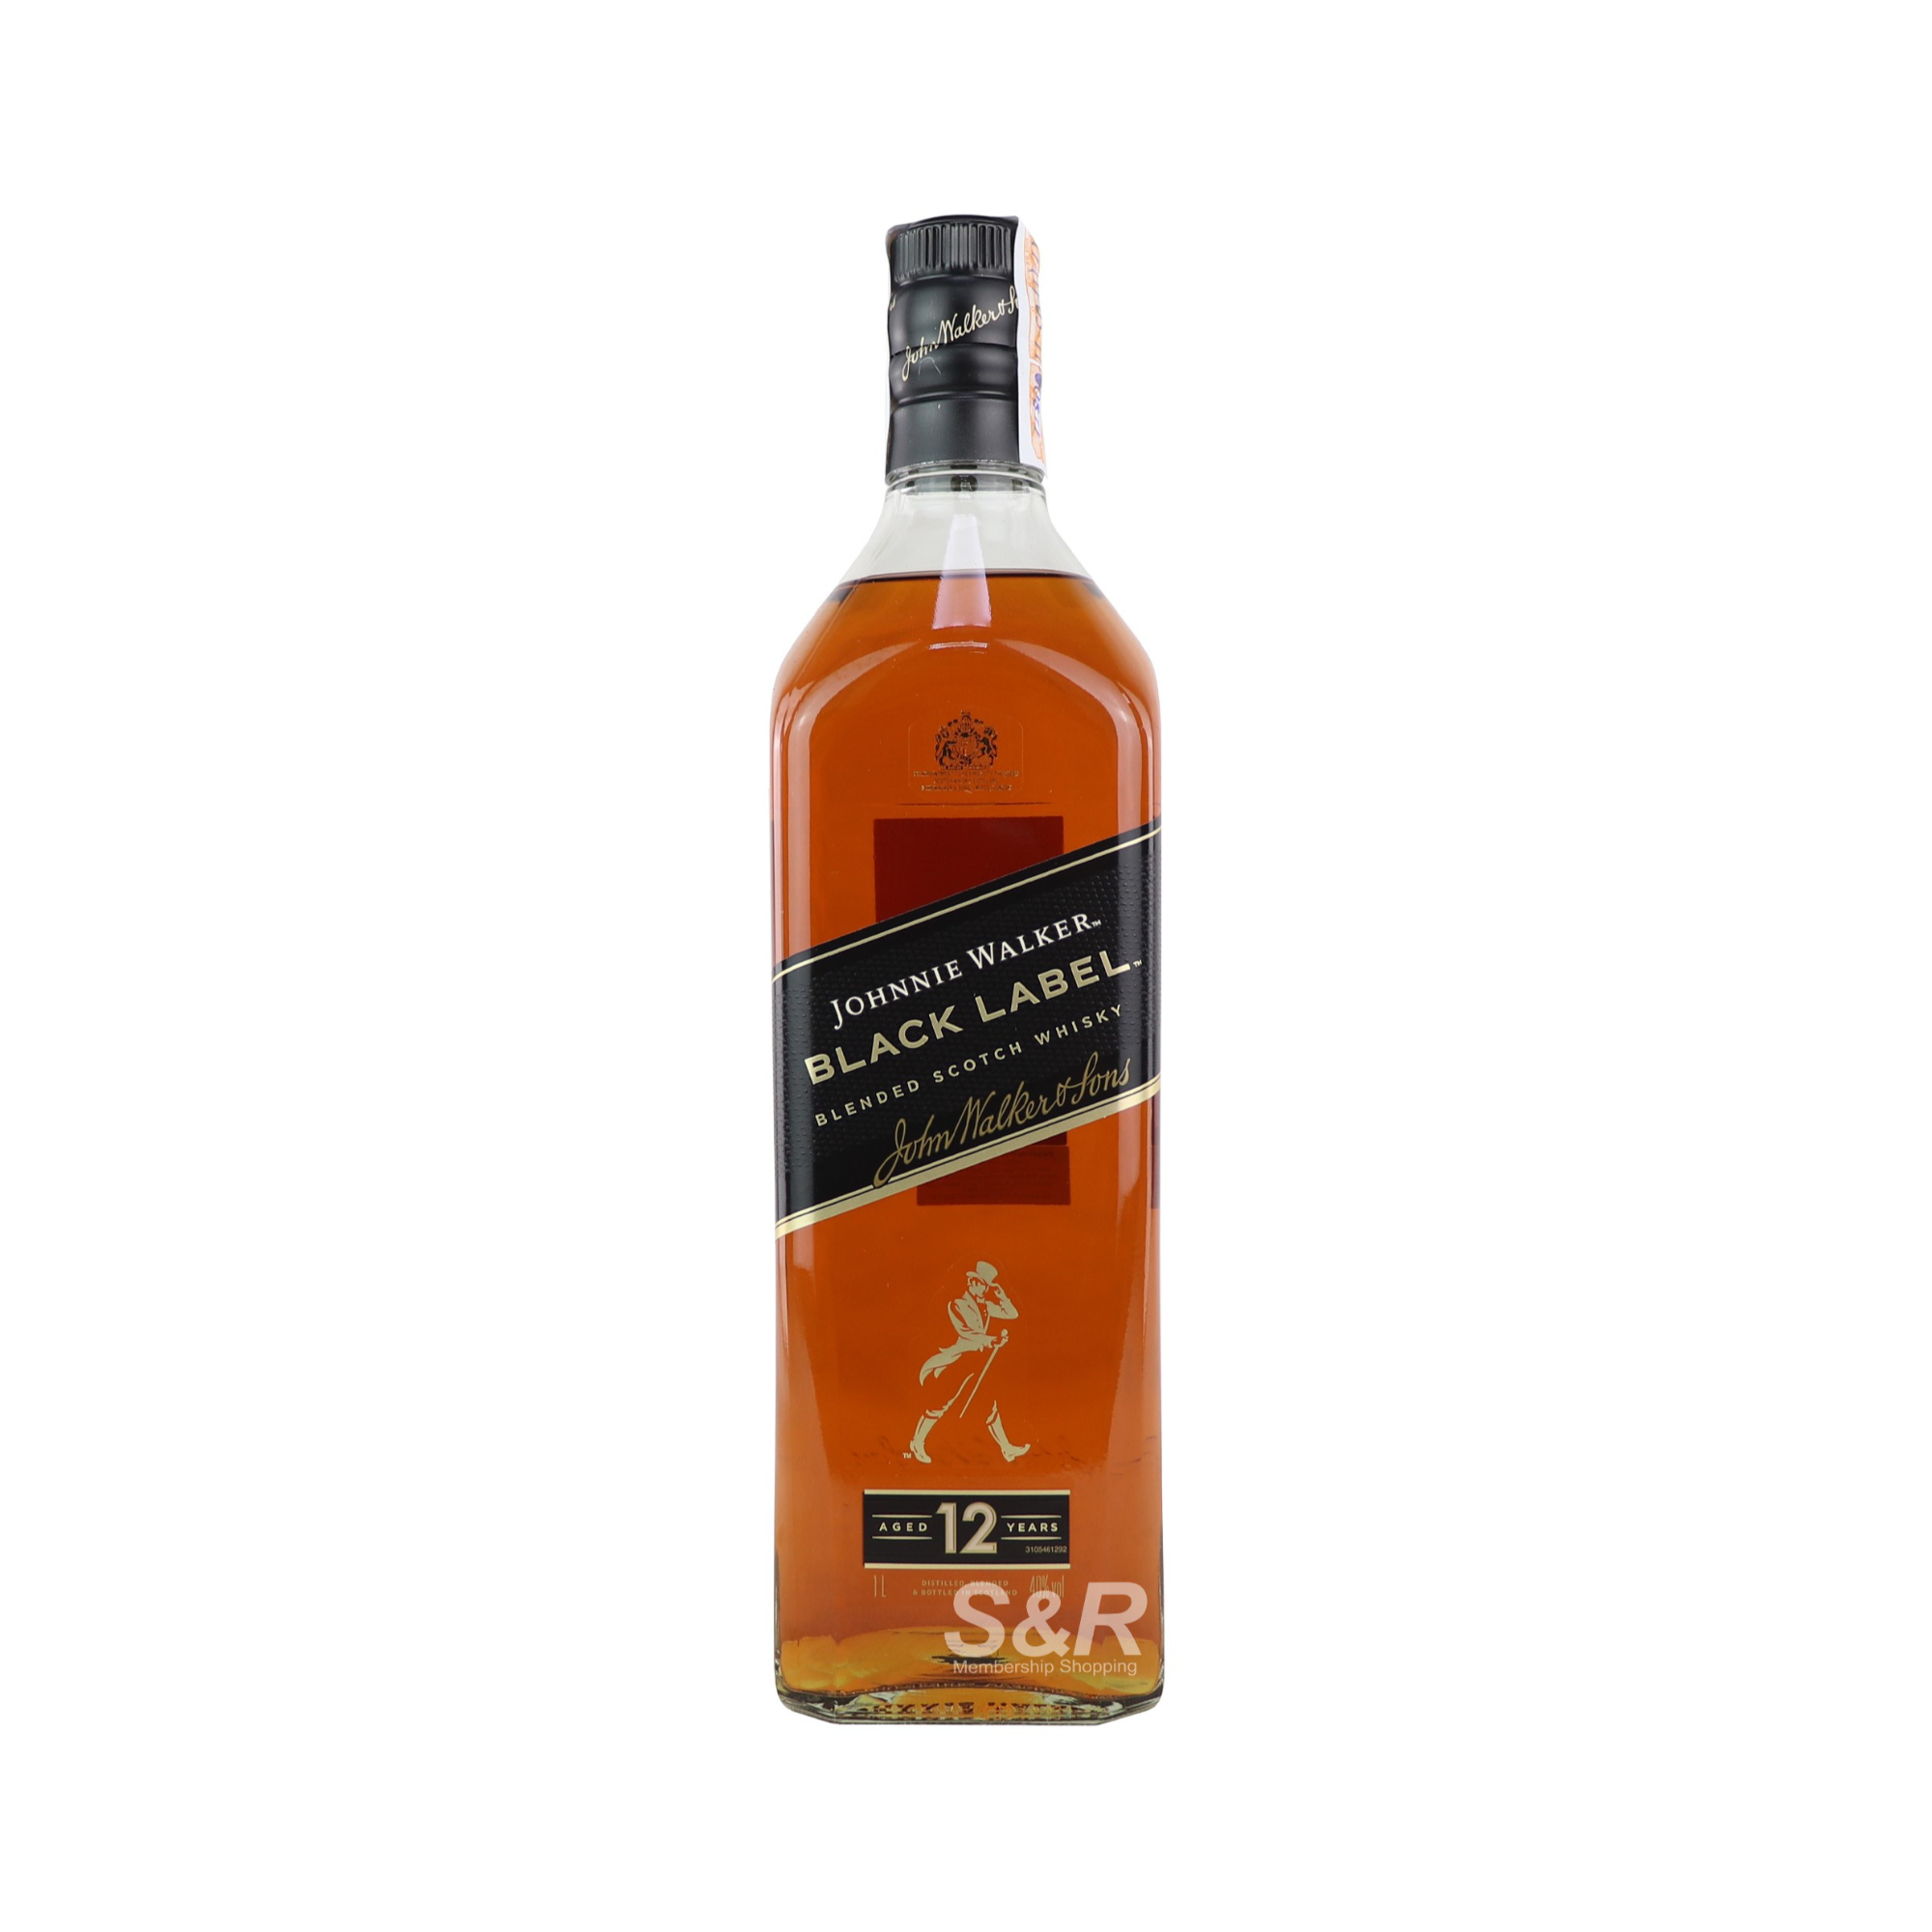 Johnnie Walker Black Label Blended Scotch Whisky Value Pack 1L